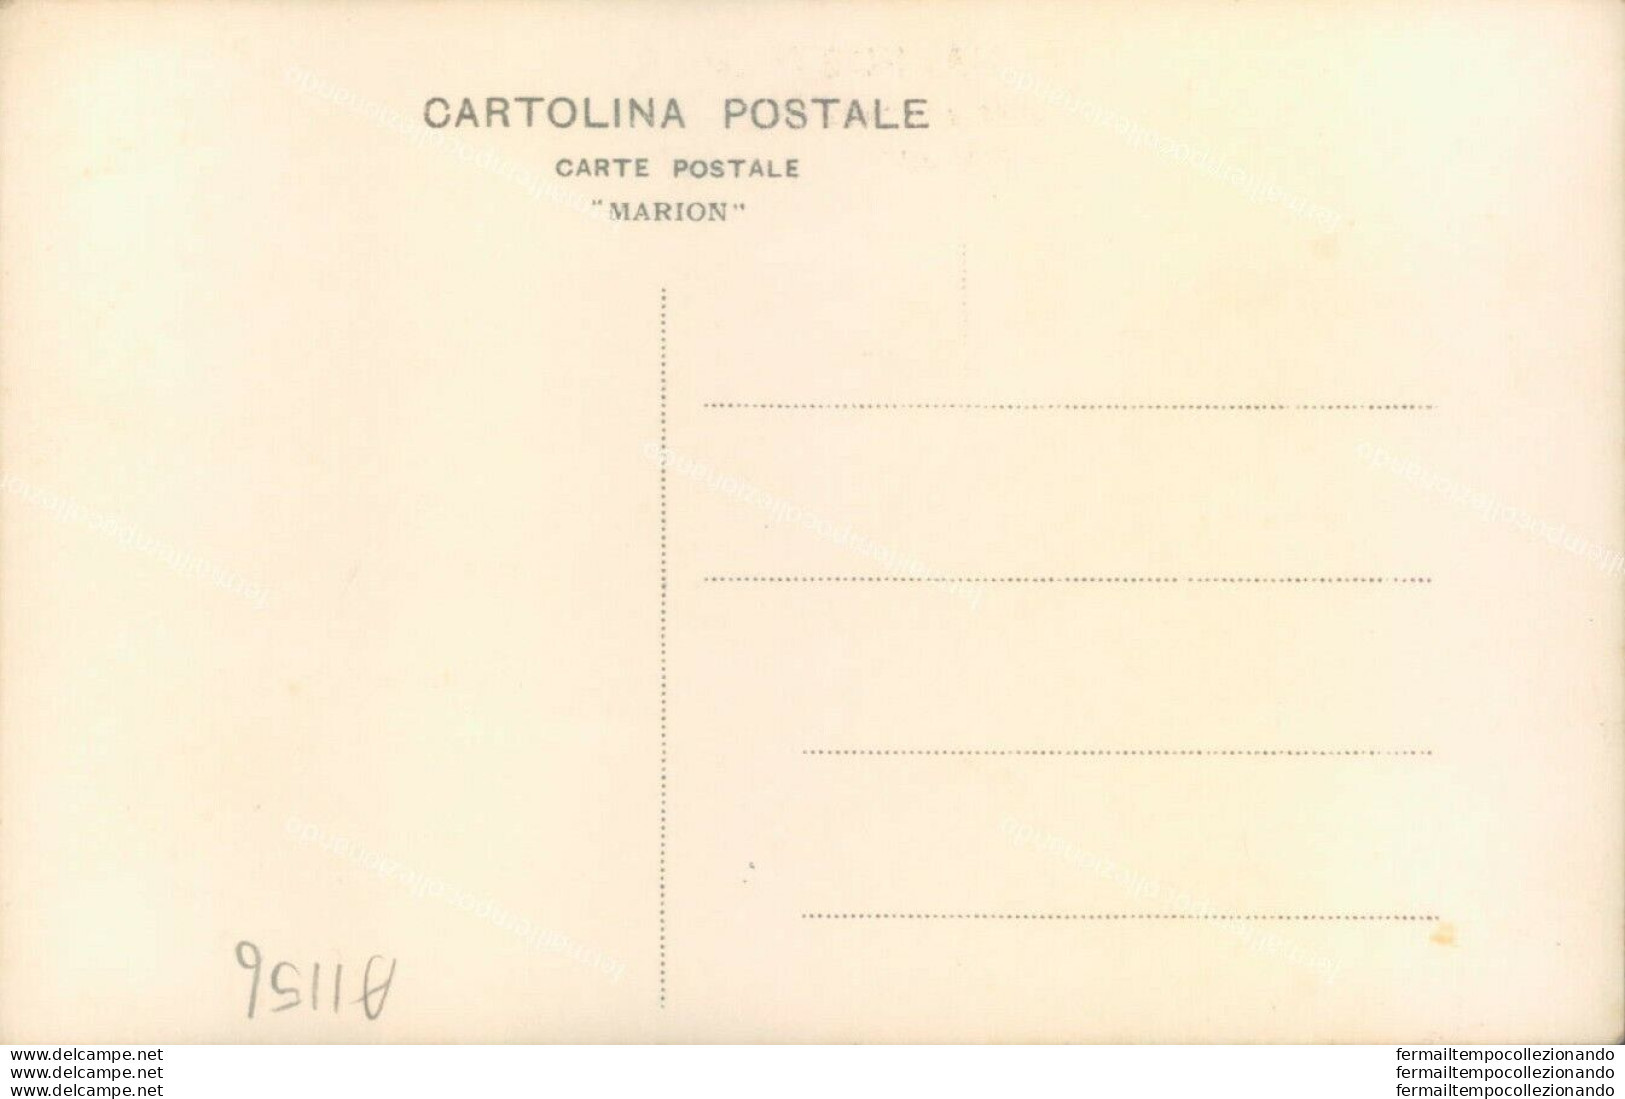 A1156 Cartolina Fotografica Legione Fascista Di Salerno In Visita A Roma - Salerno